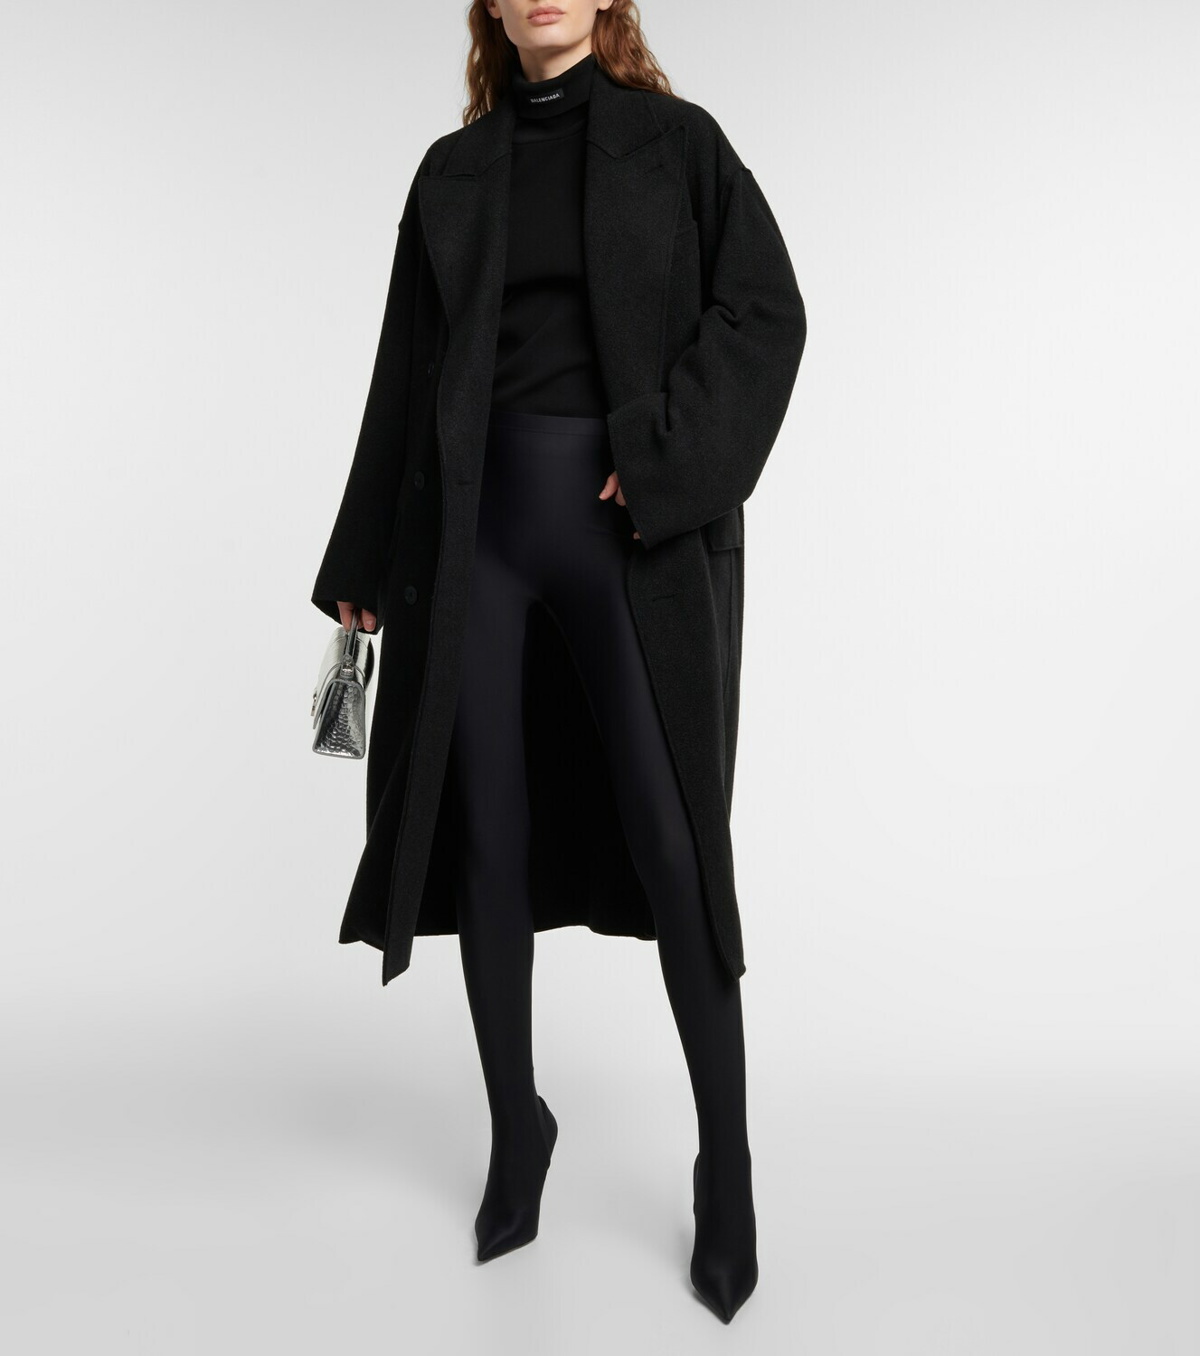 Balenciaga - Oversized cashmere coat Balenciaga